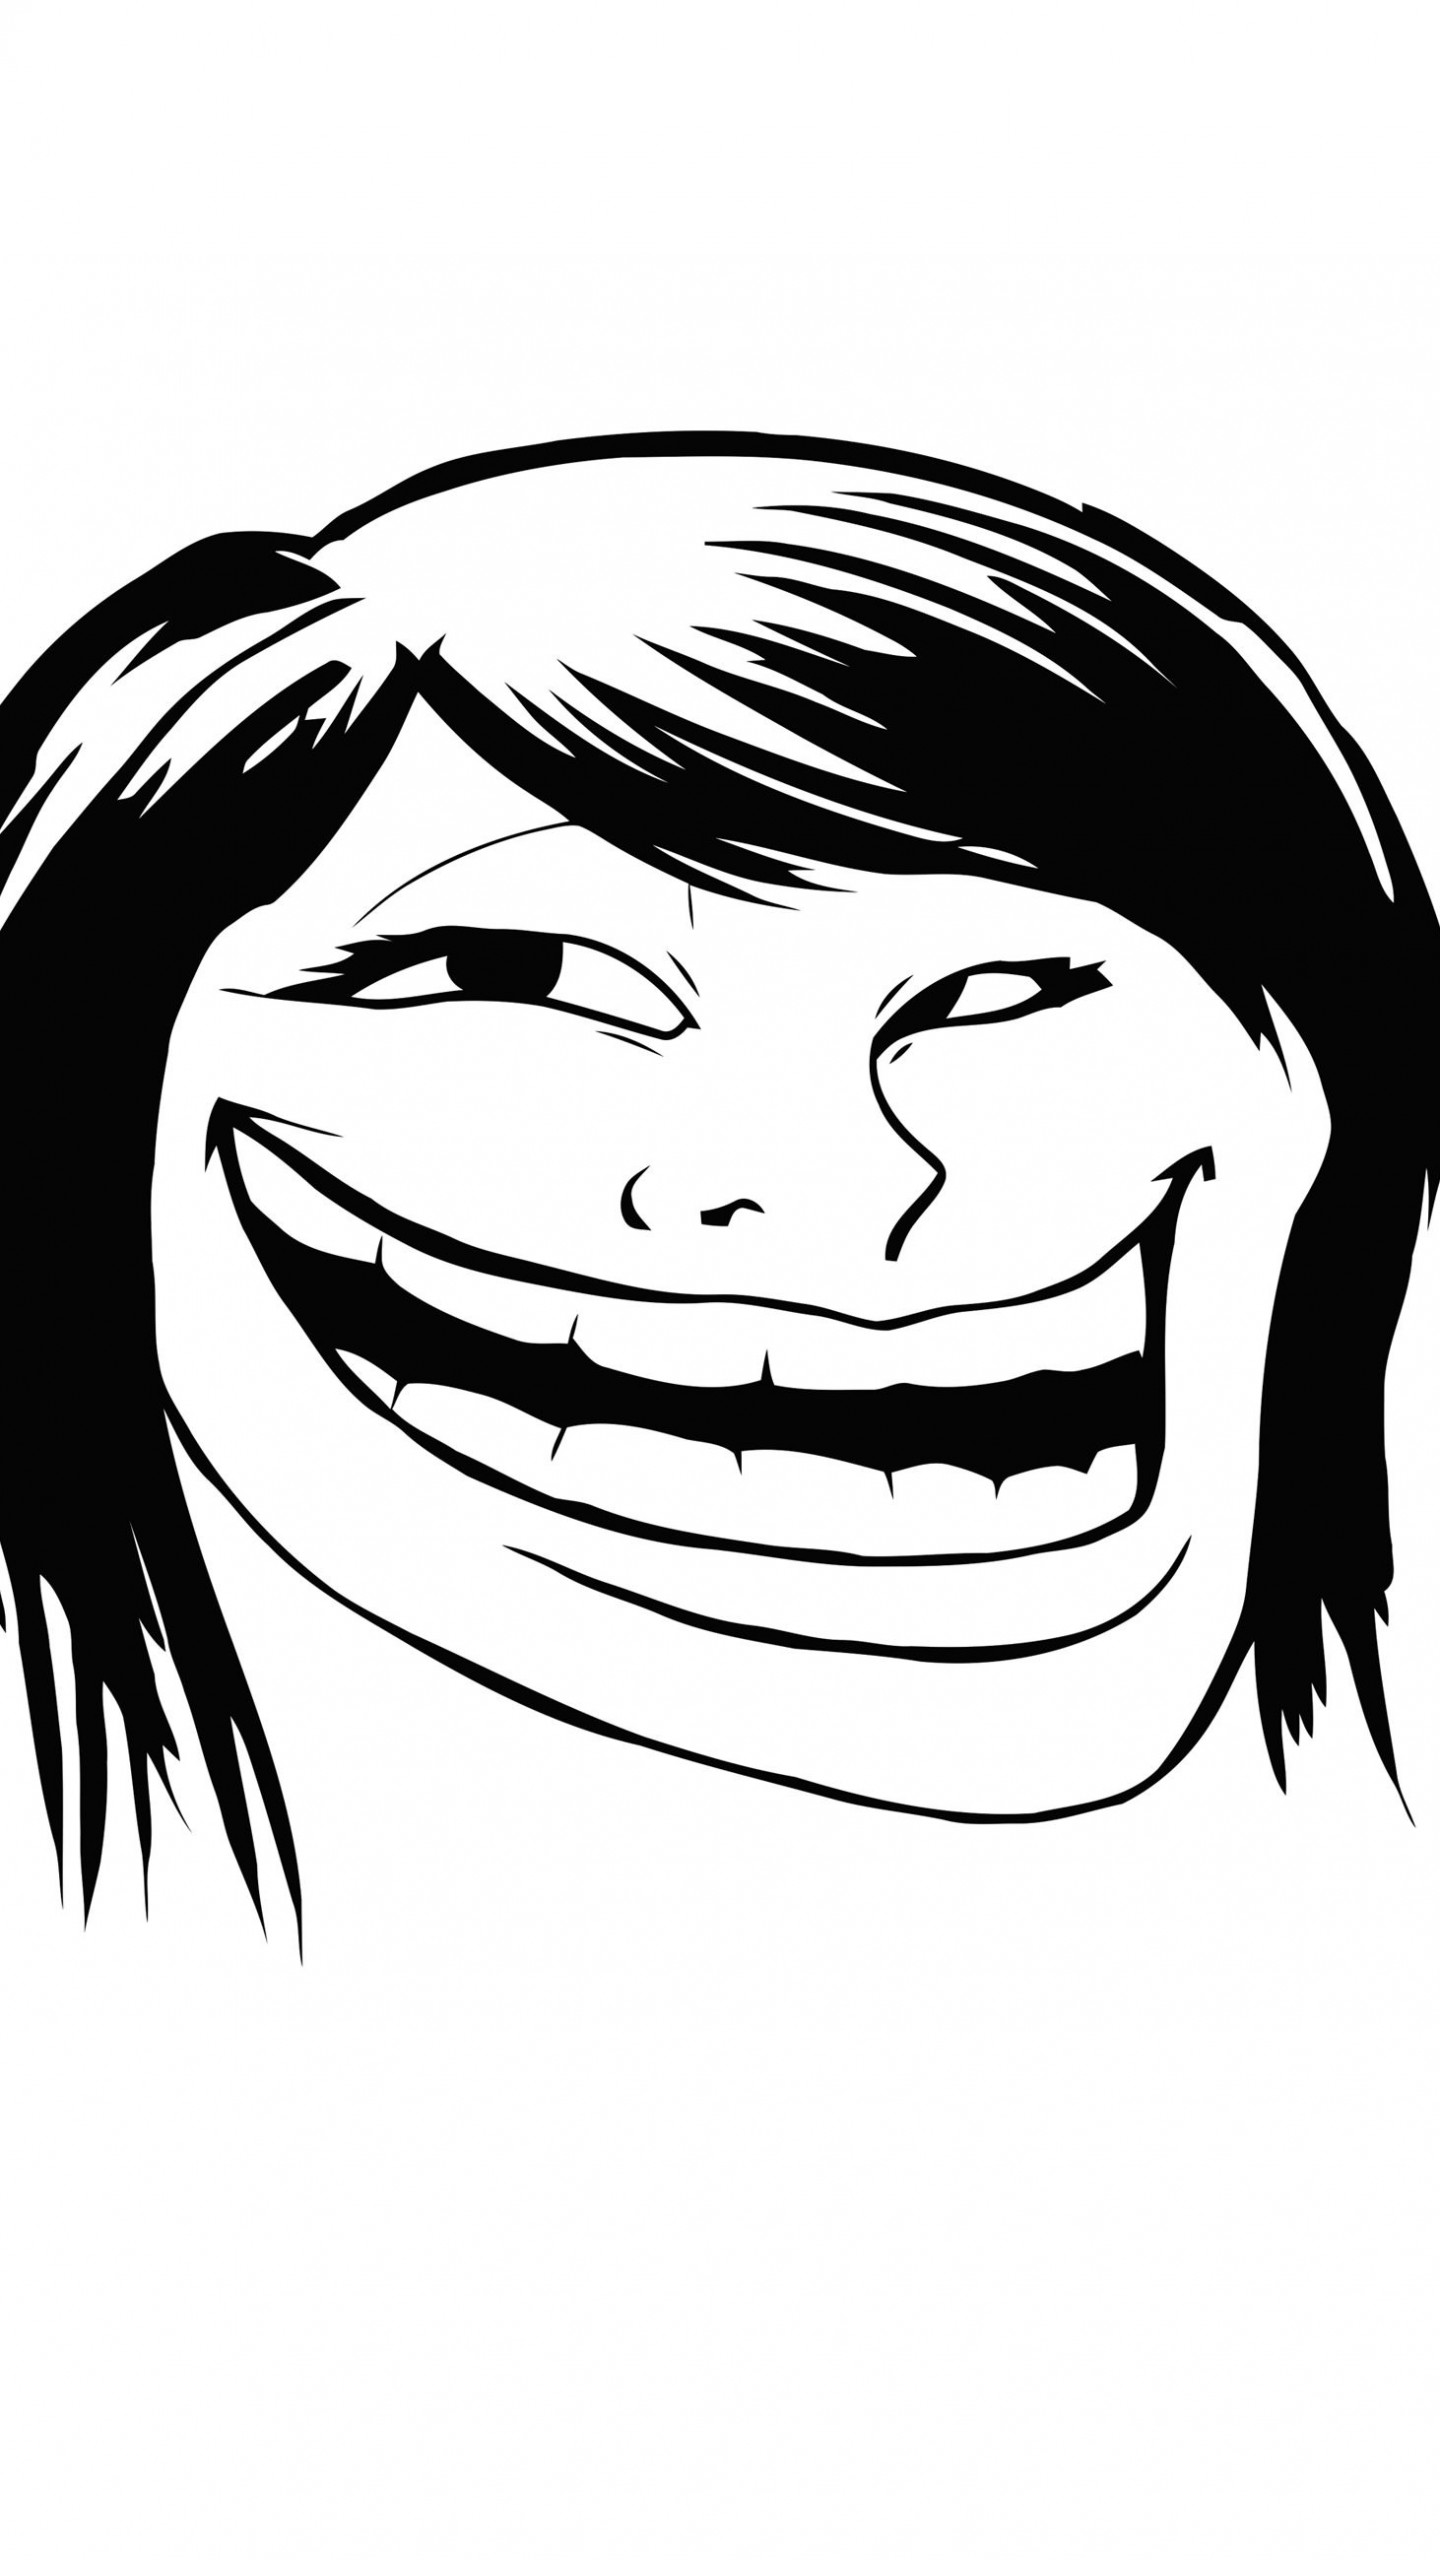 Female Troll Face Meme Wallpaper for LG G3